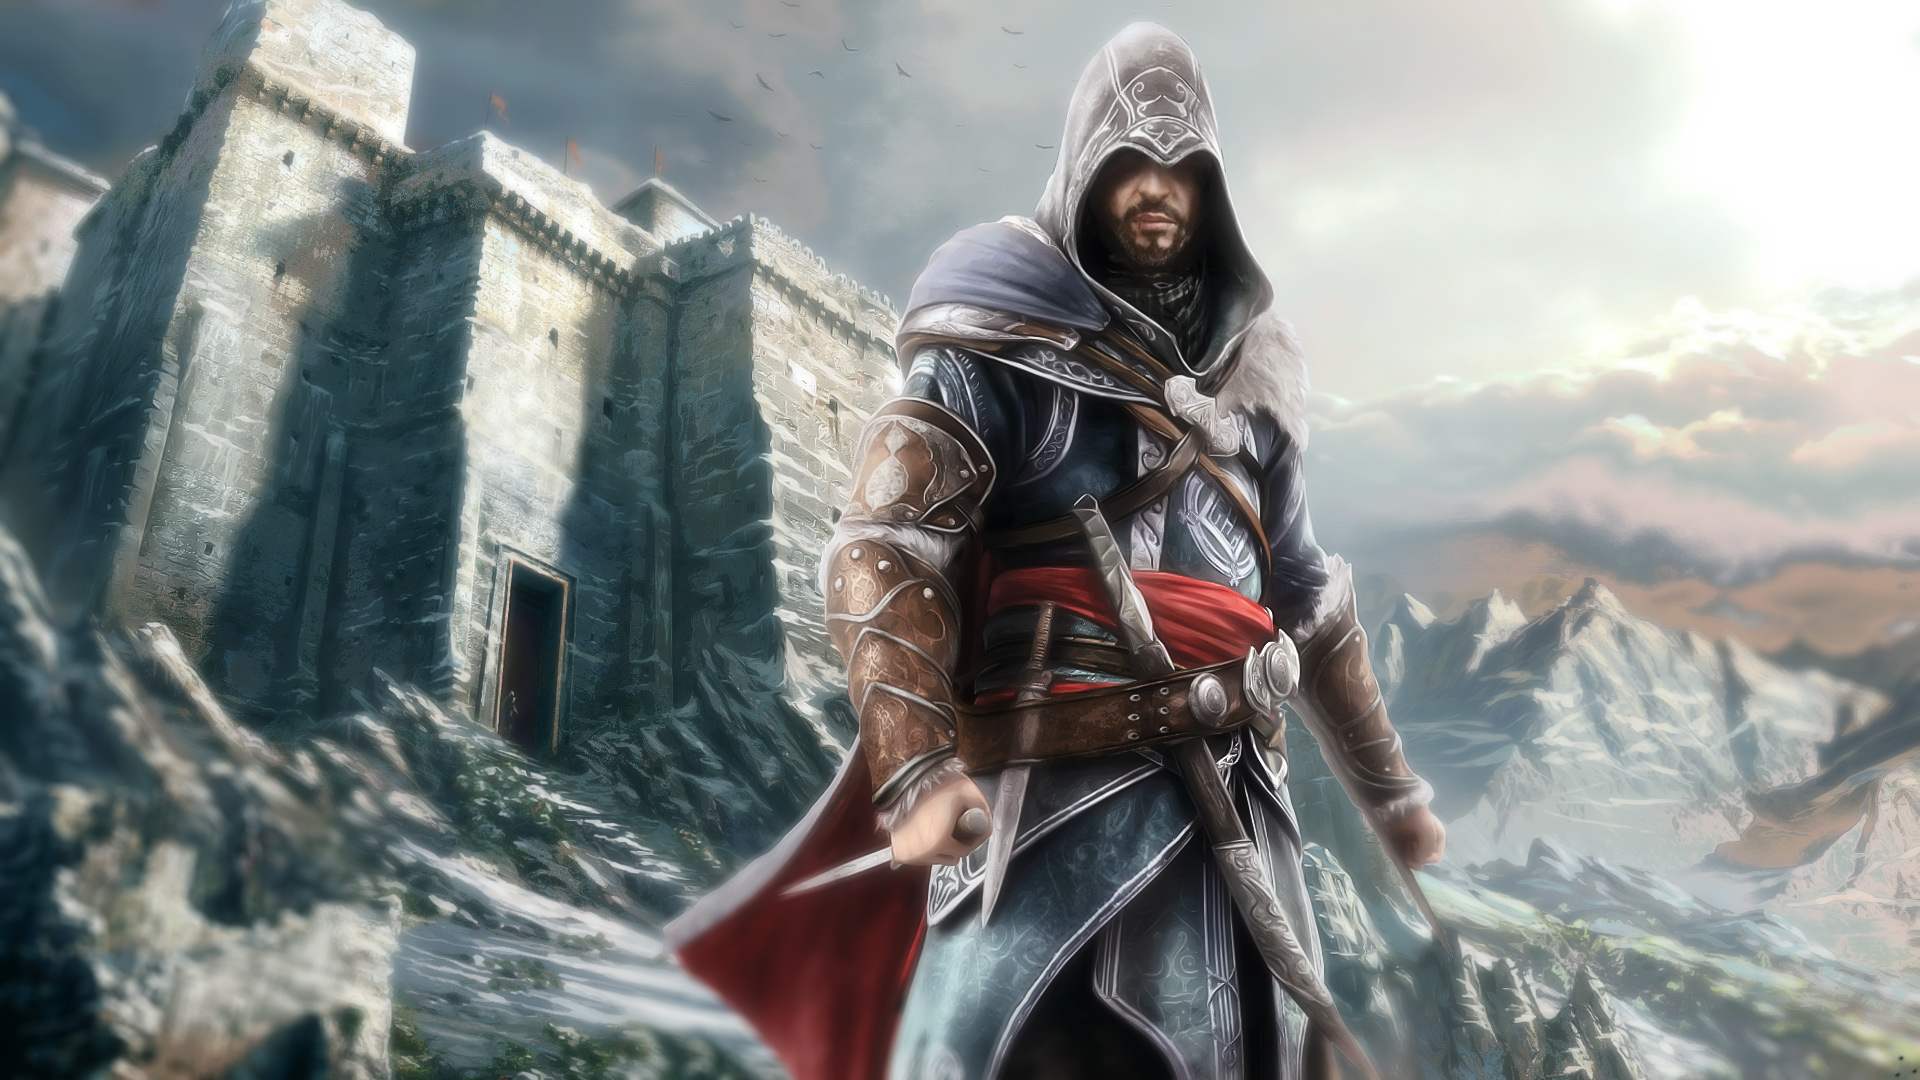 Ezio Assassin S Creed Revelations Wallpaper Best Fan